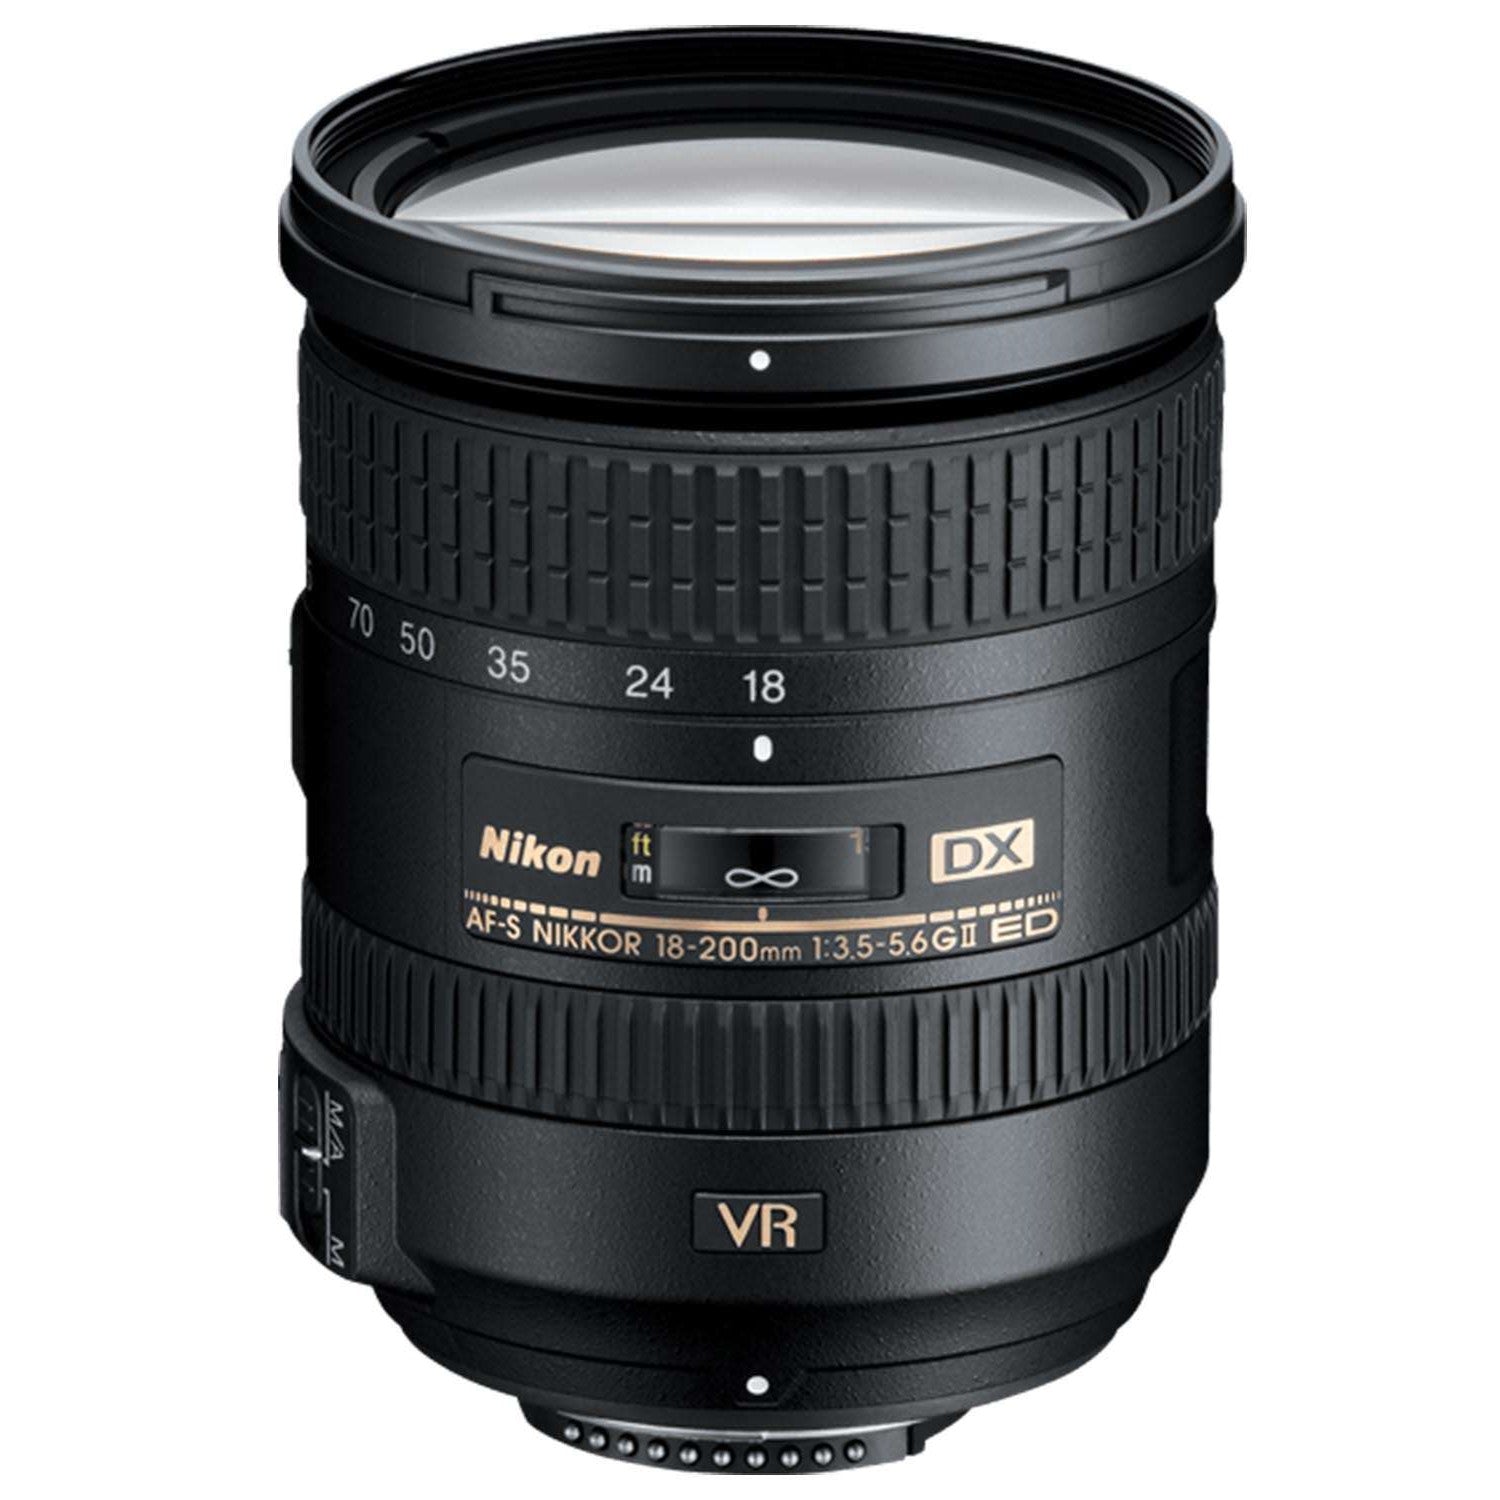 Nikon 18-200mm f3.5-5.6 VR II DX